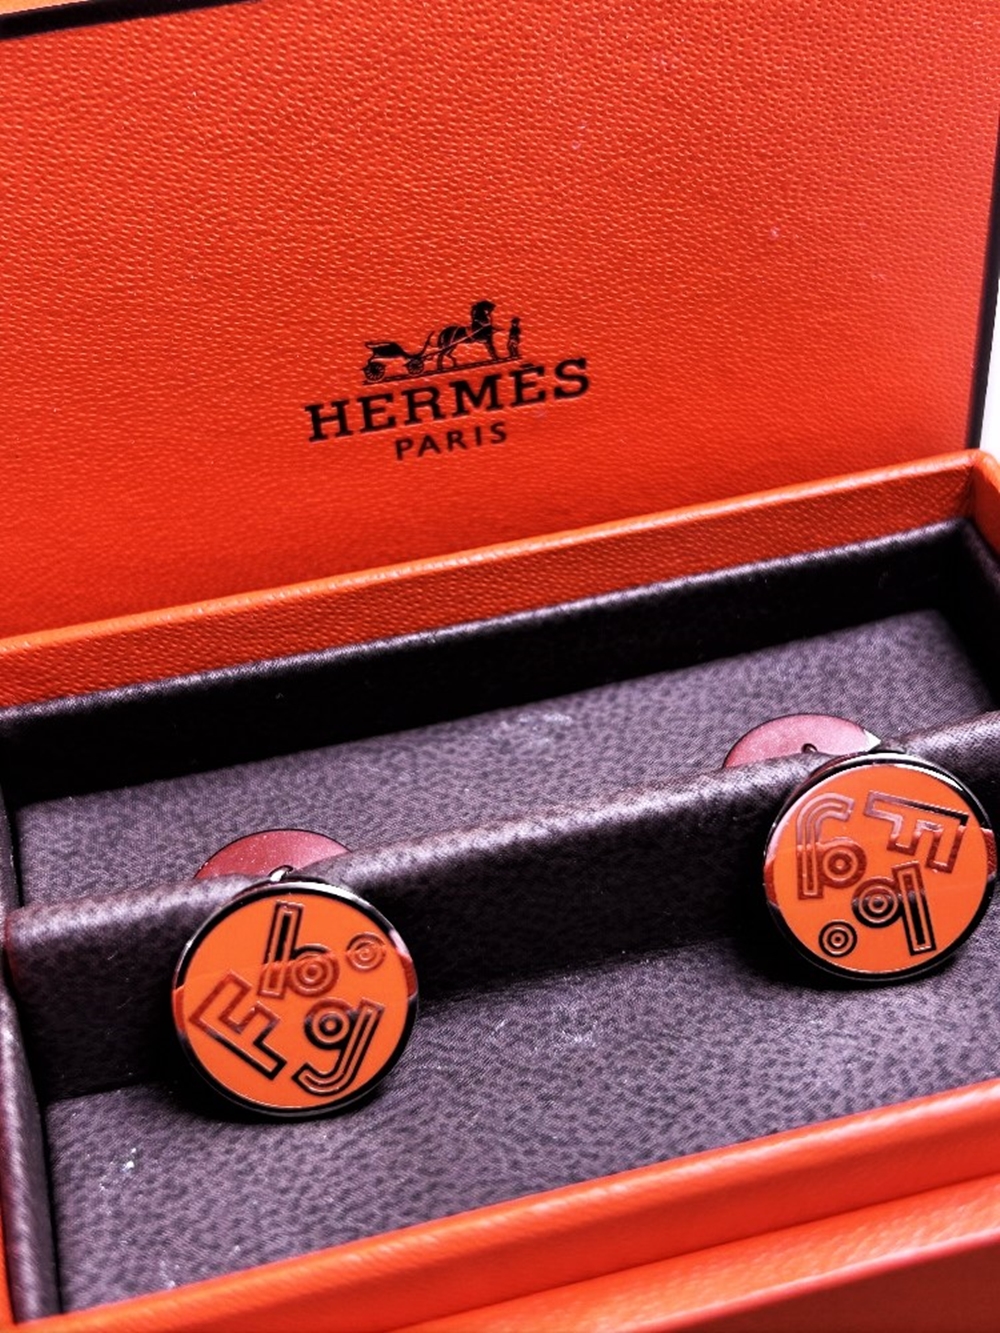 Herme&grave;s Paris Serie Orange Edition Cufflinks-Unused Examples - Image 5 of 5